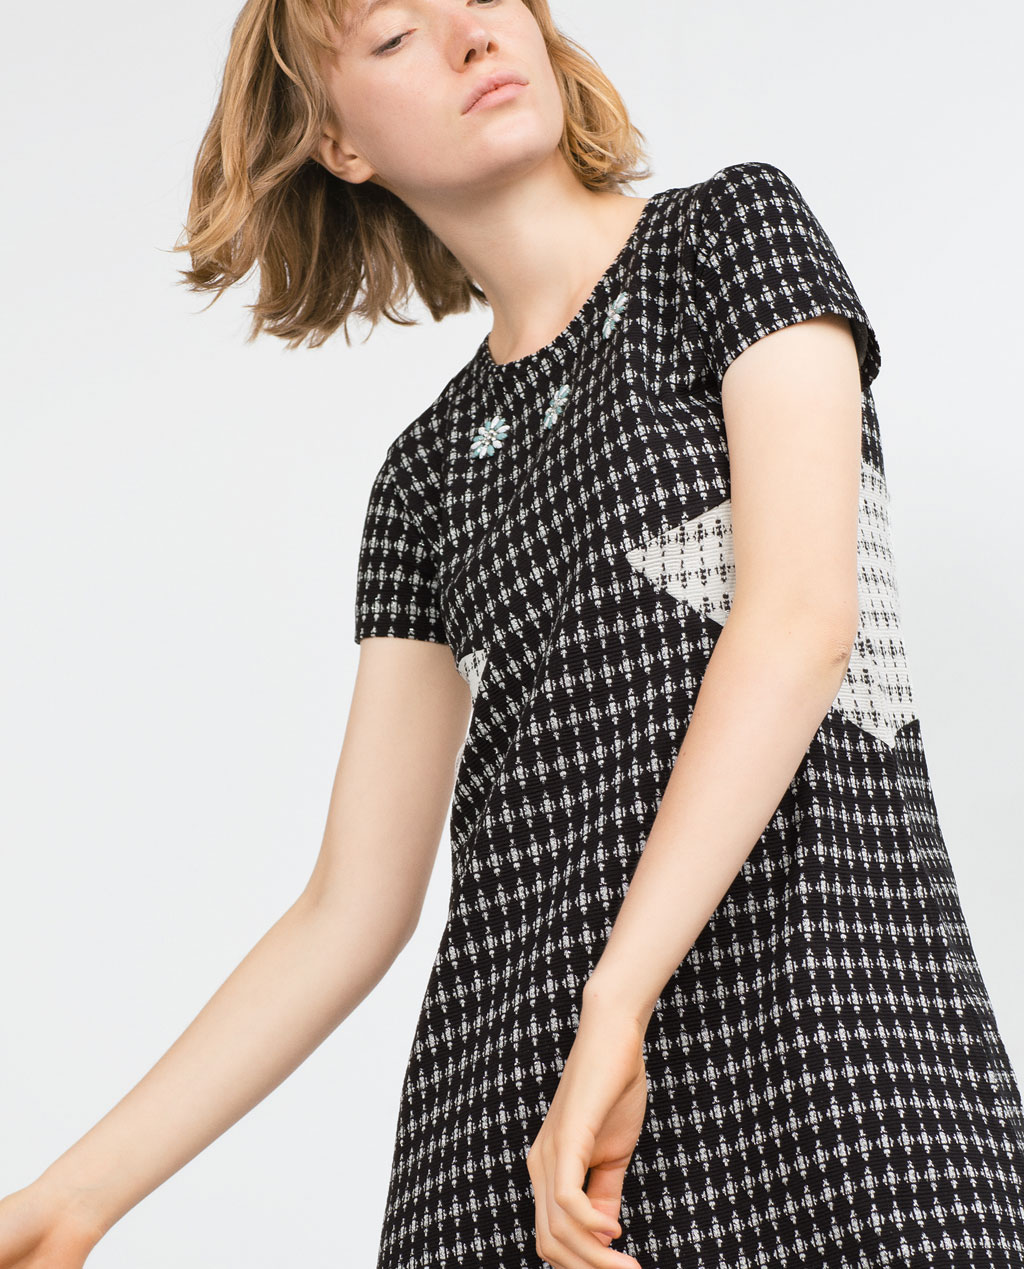 Zara mujer: seleccionamos los 10 vestidos imprescindibles este otoño invierno 2015 - Modalia.es